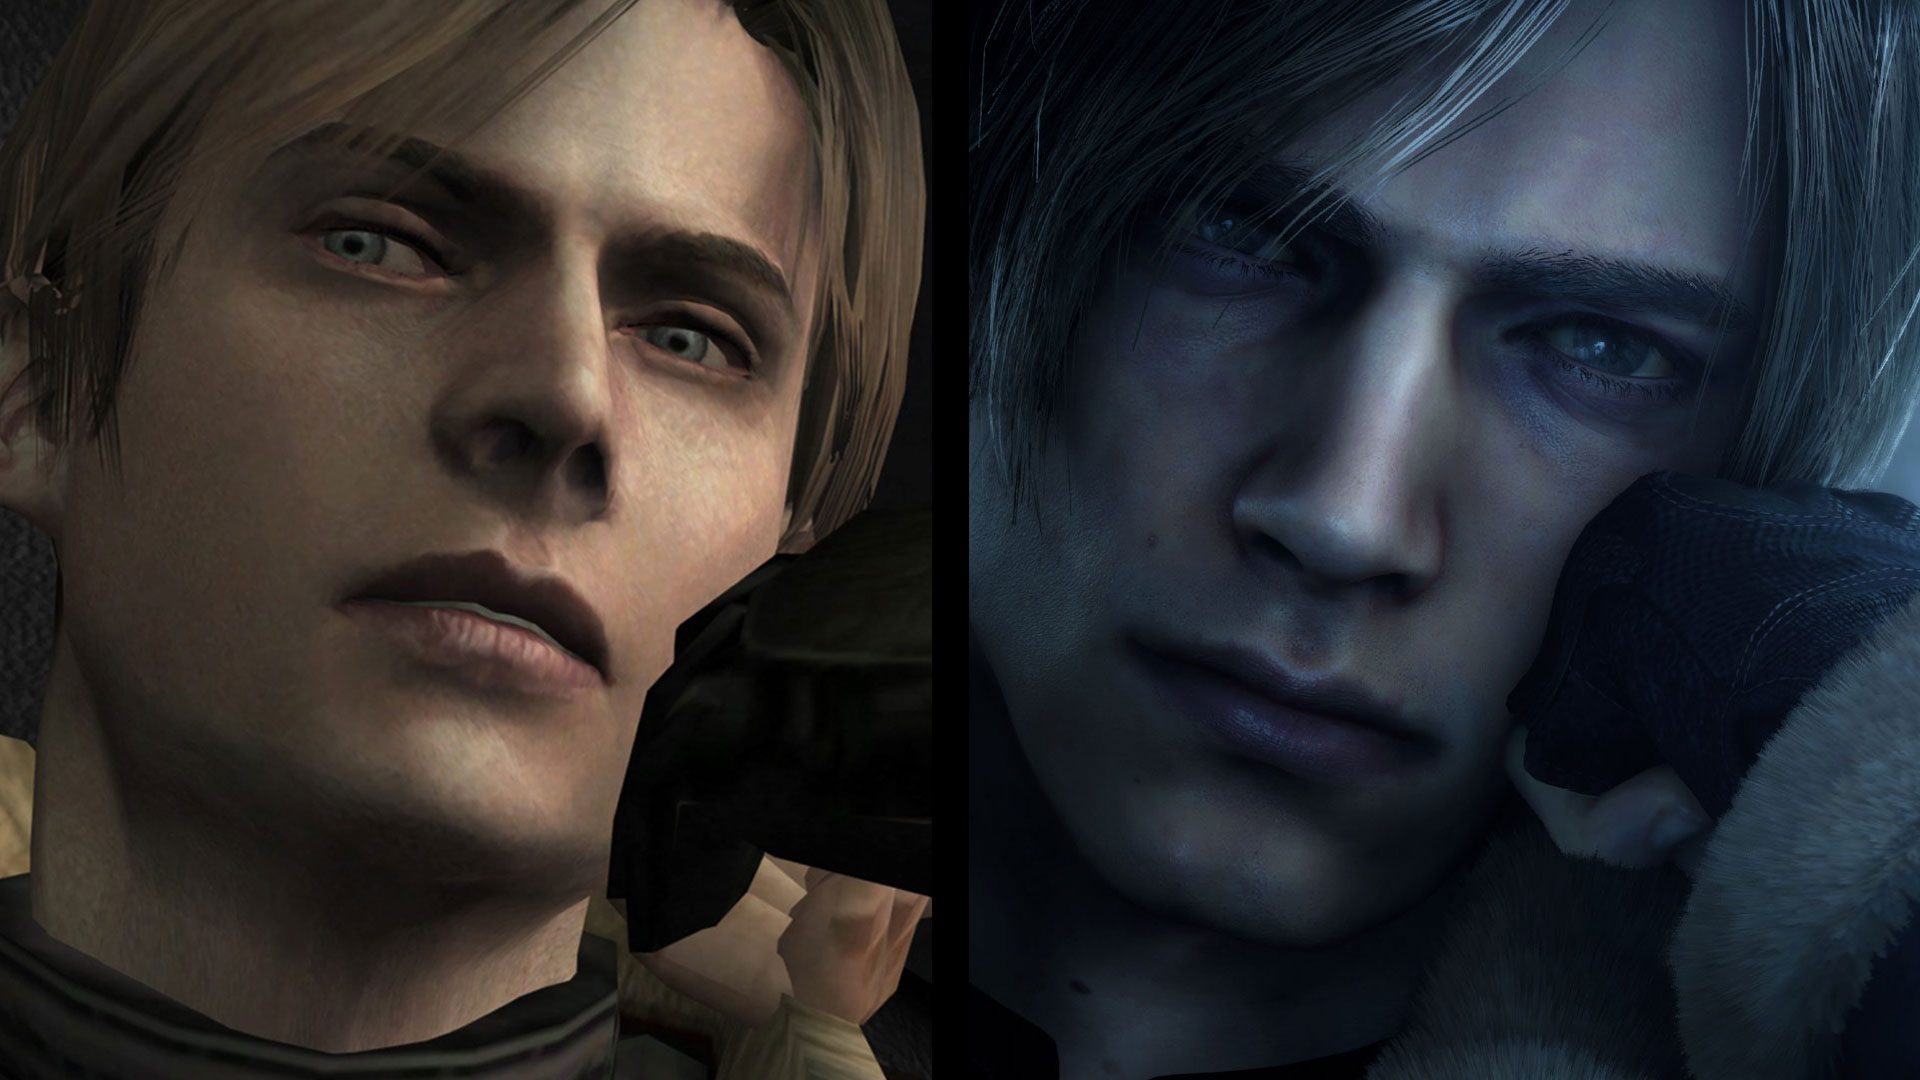 Veja comparativo entre Resident Evil 4 Remake e game original